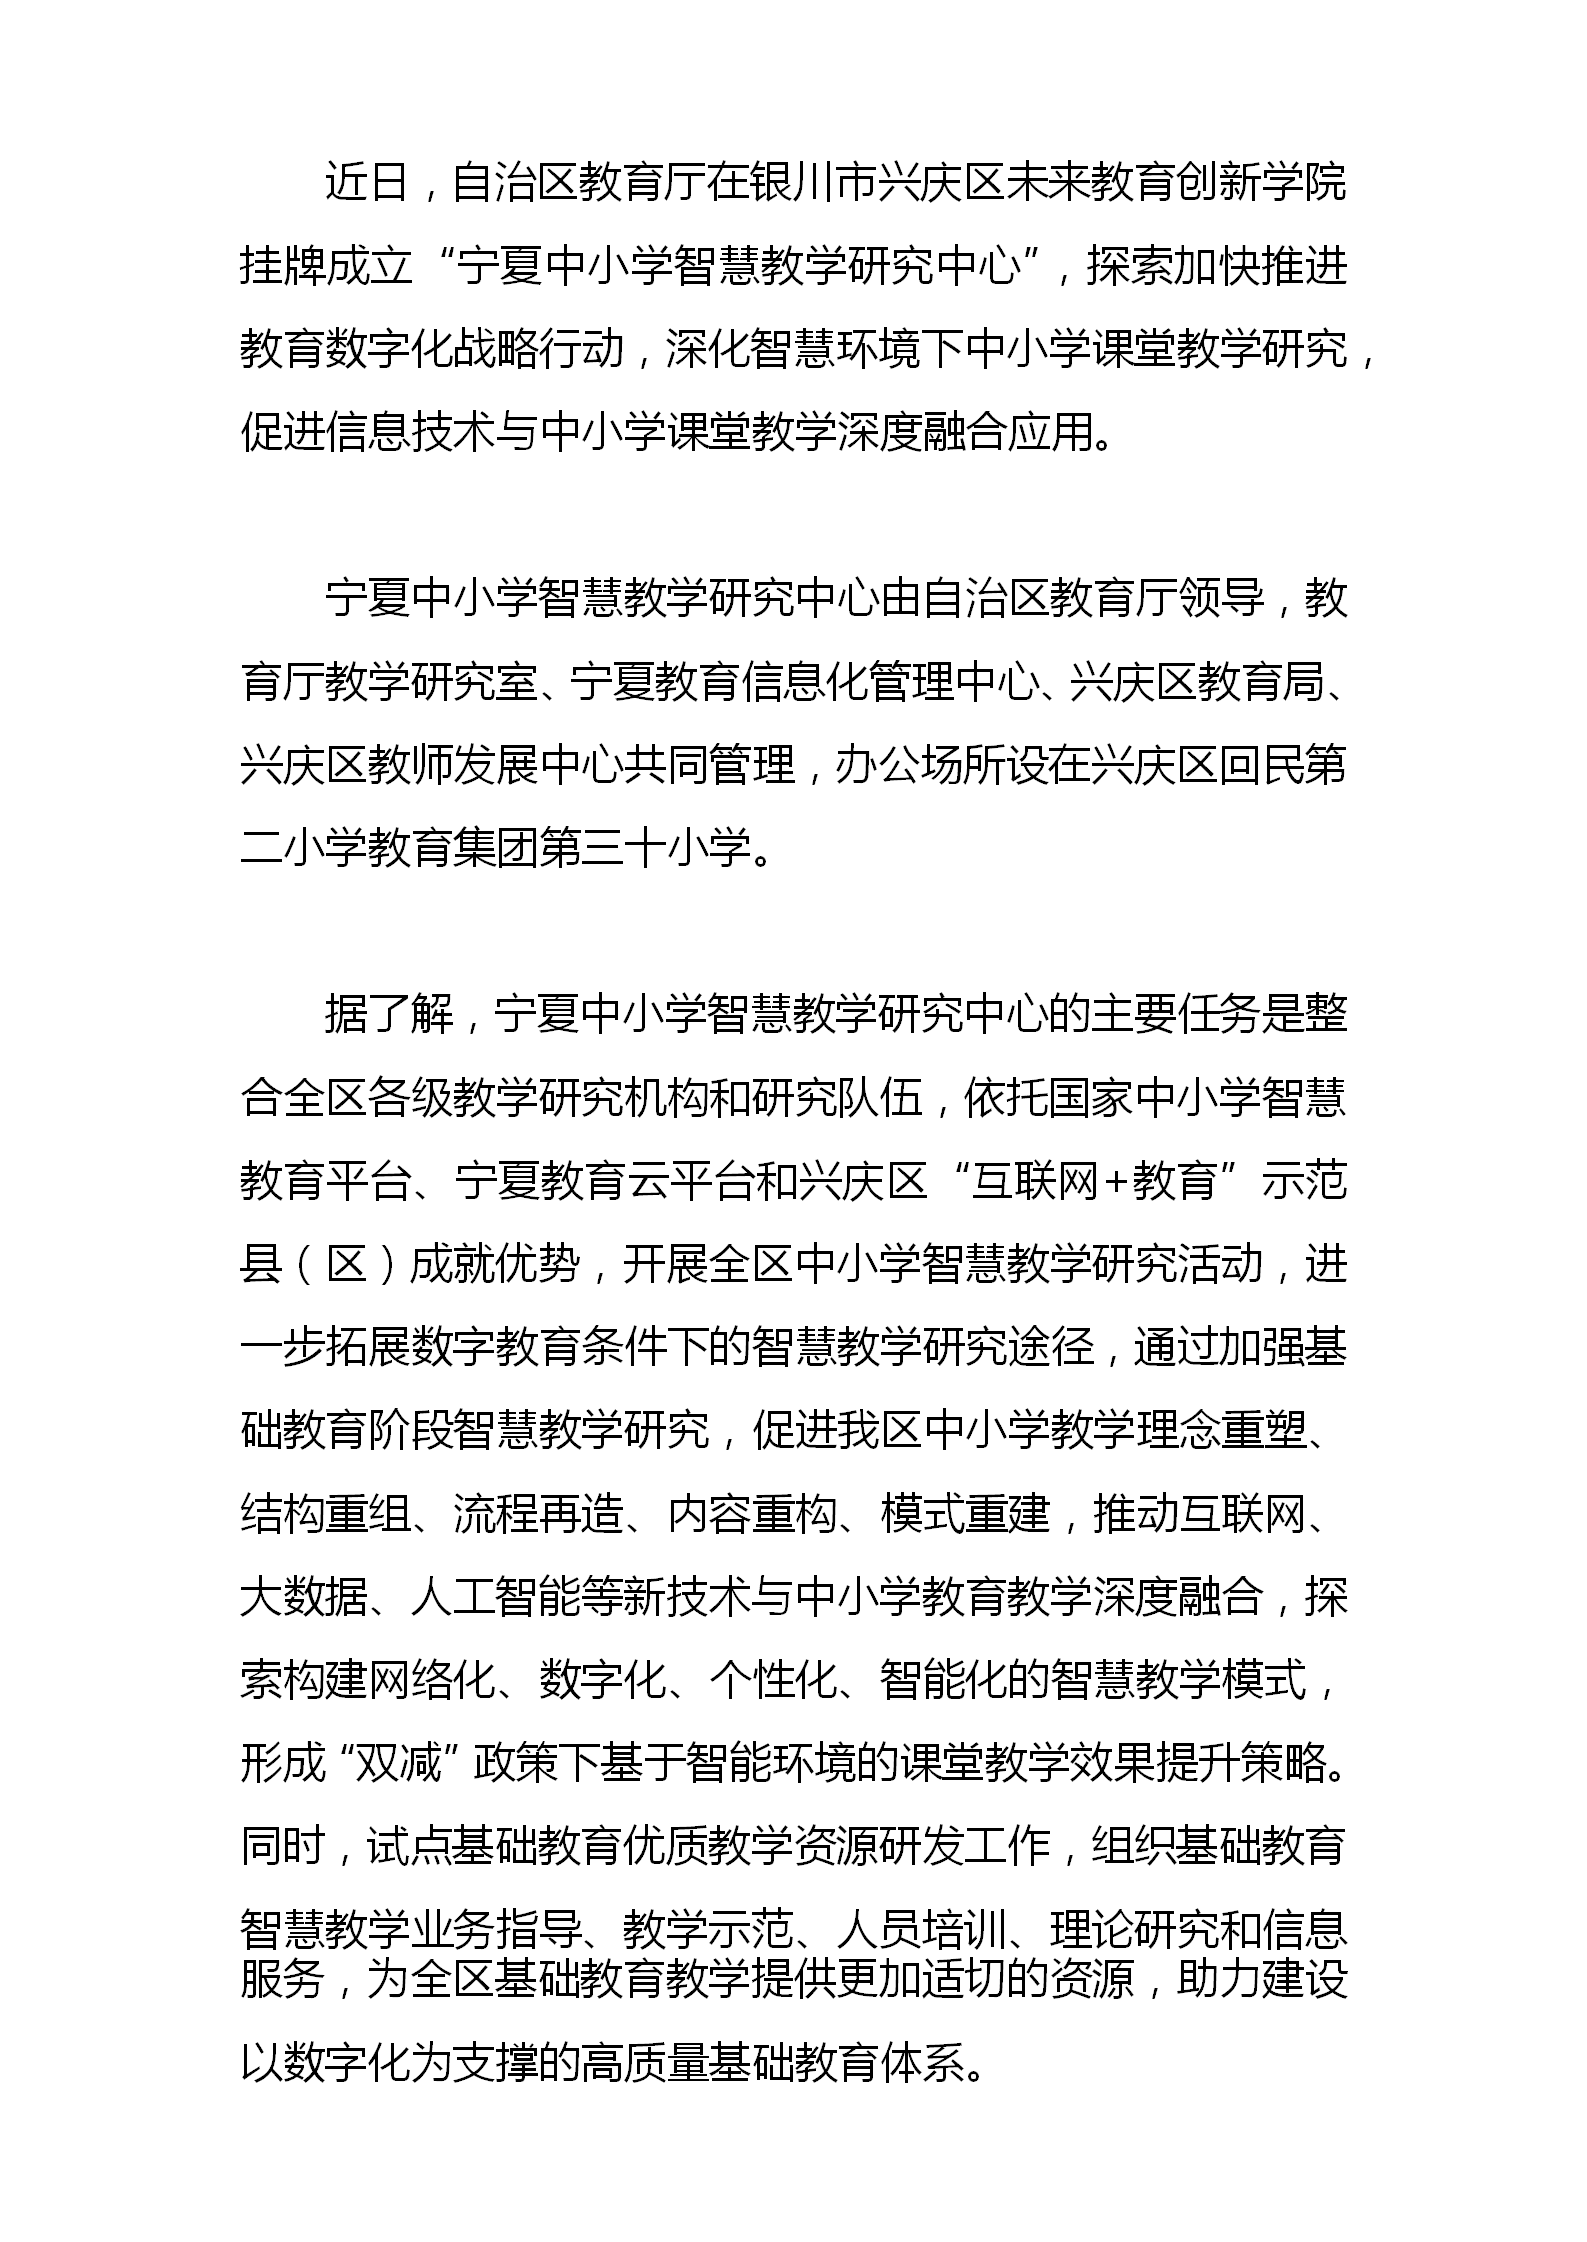 宁夏中小学智慧教学研究中心挂牌成立